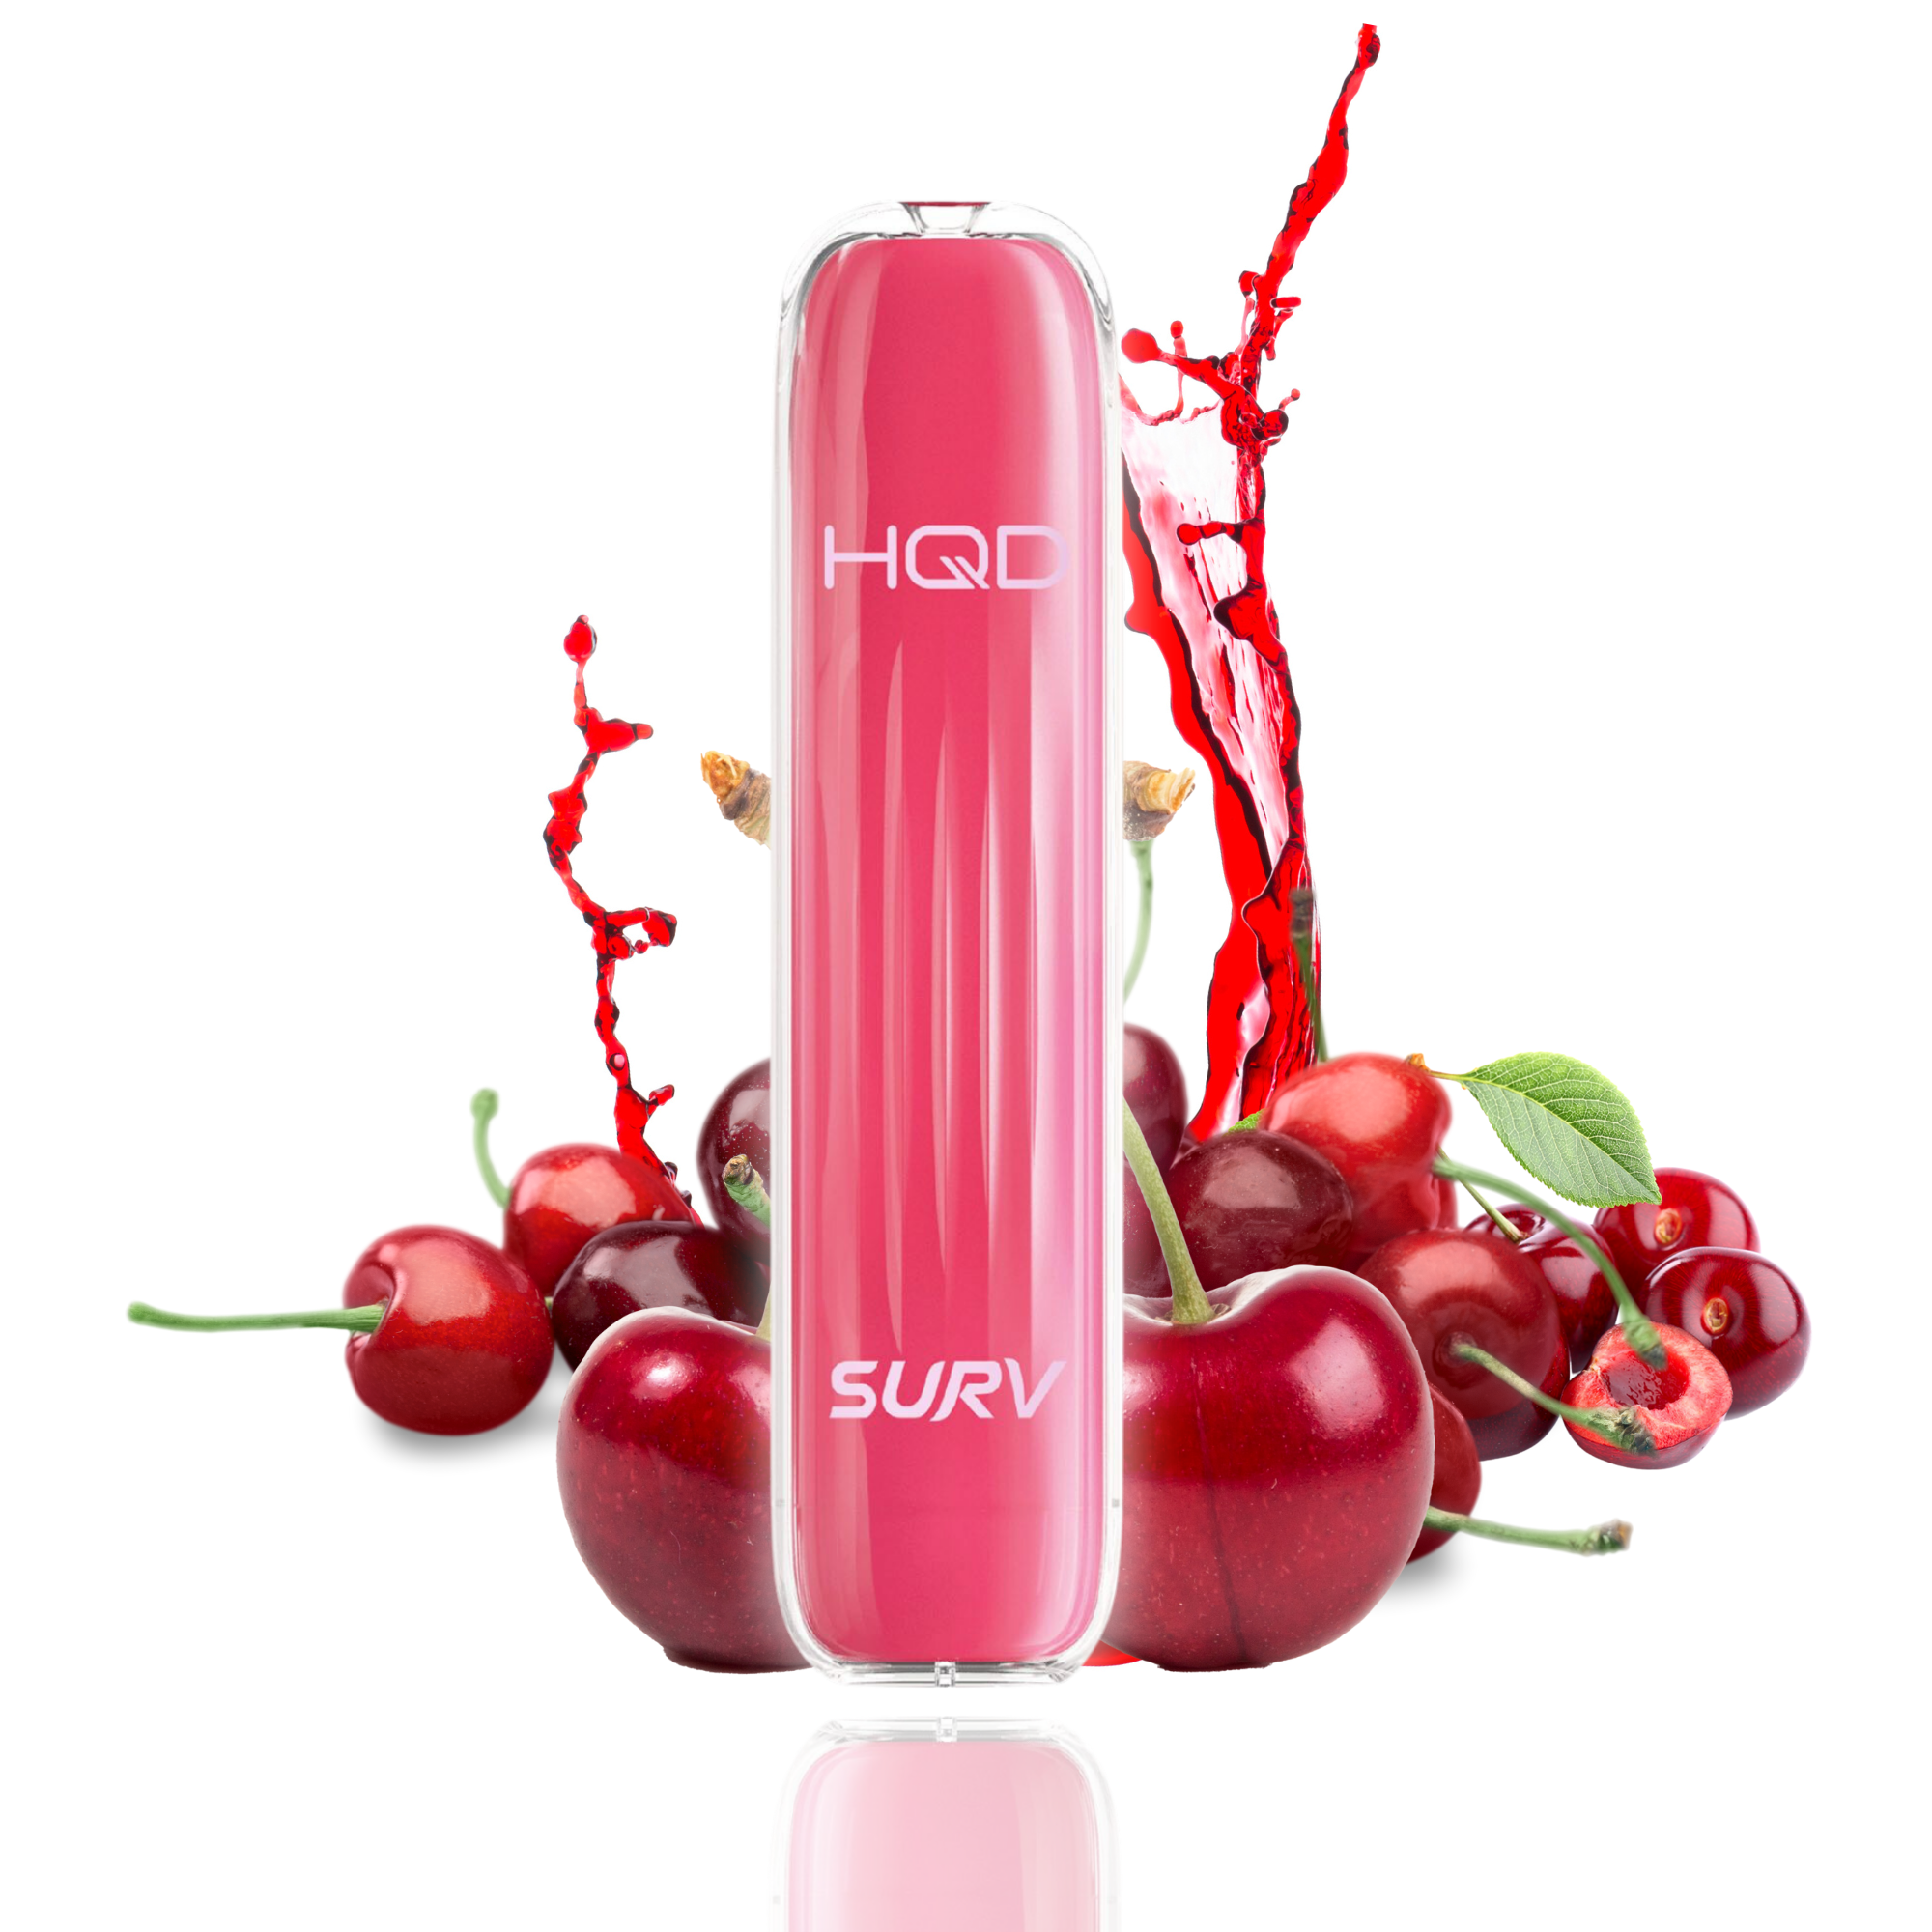 HQD Surv Cherry 18mg/ml